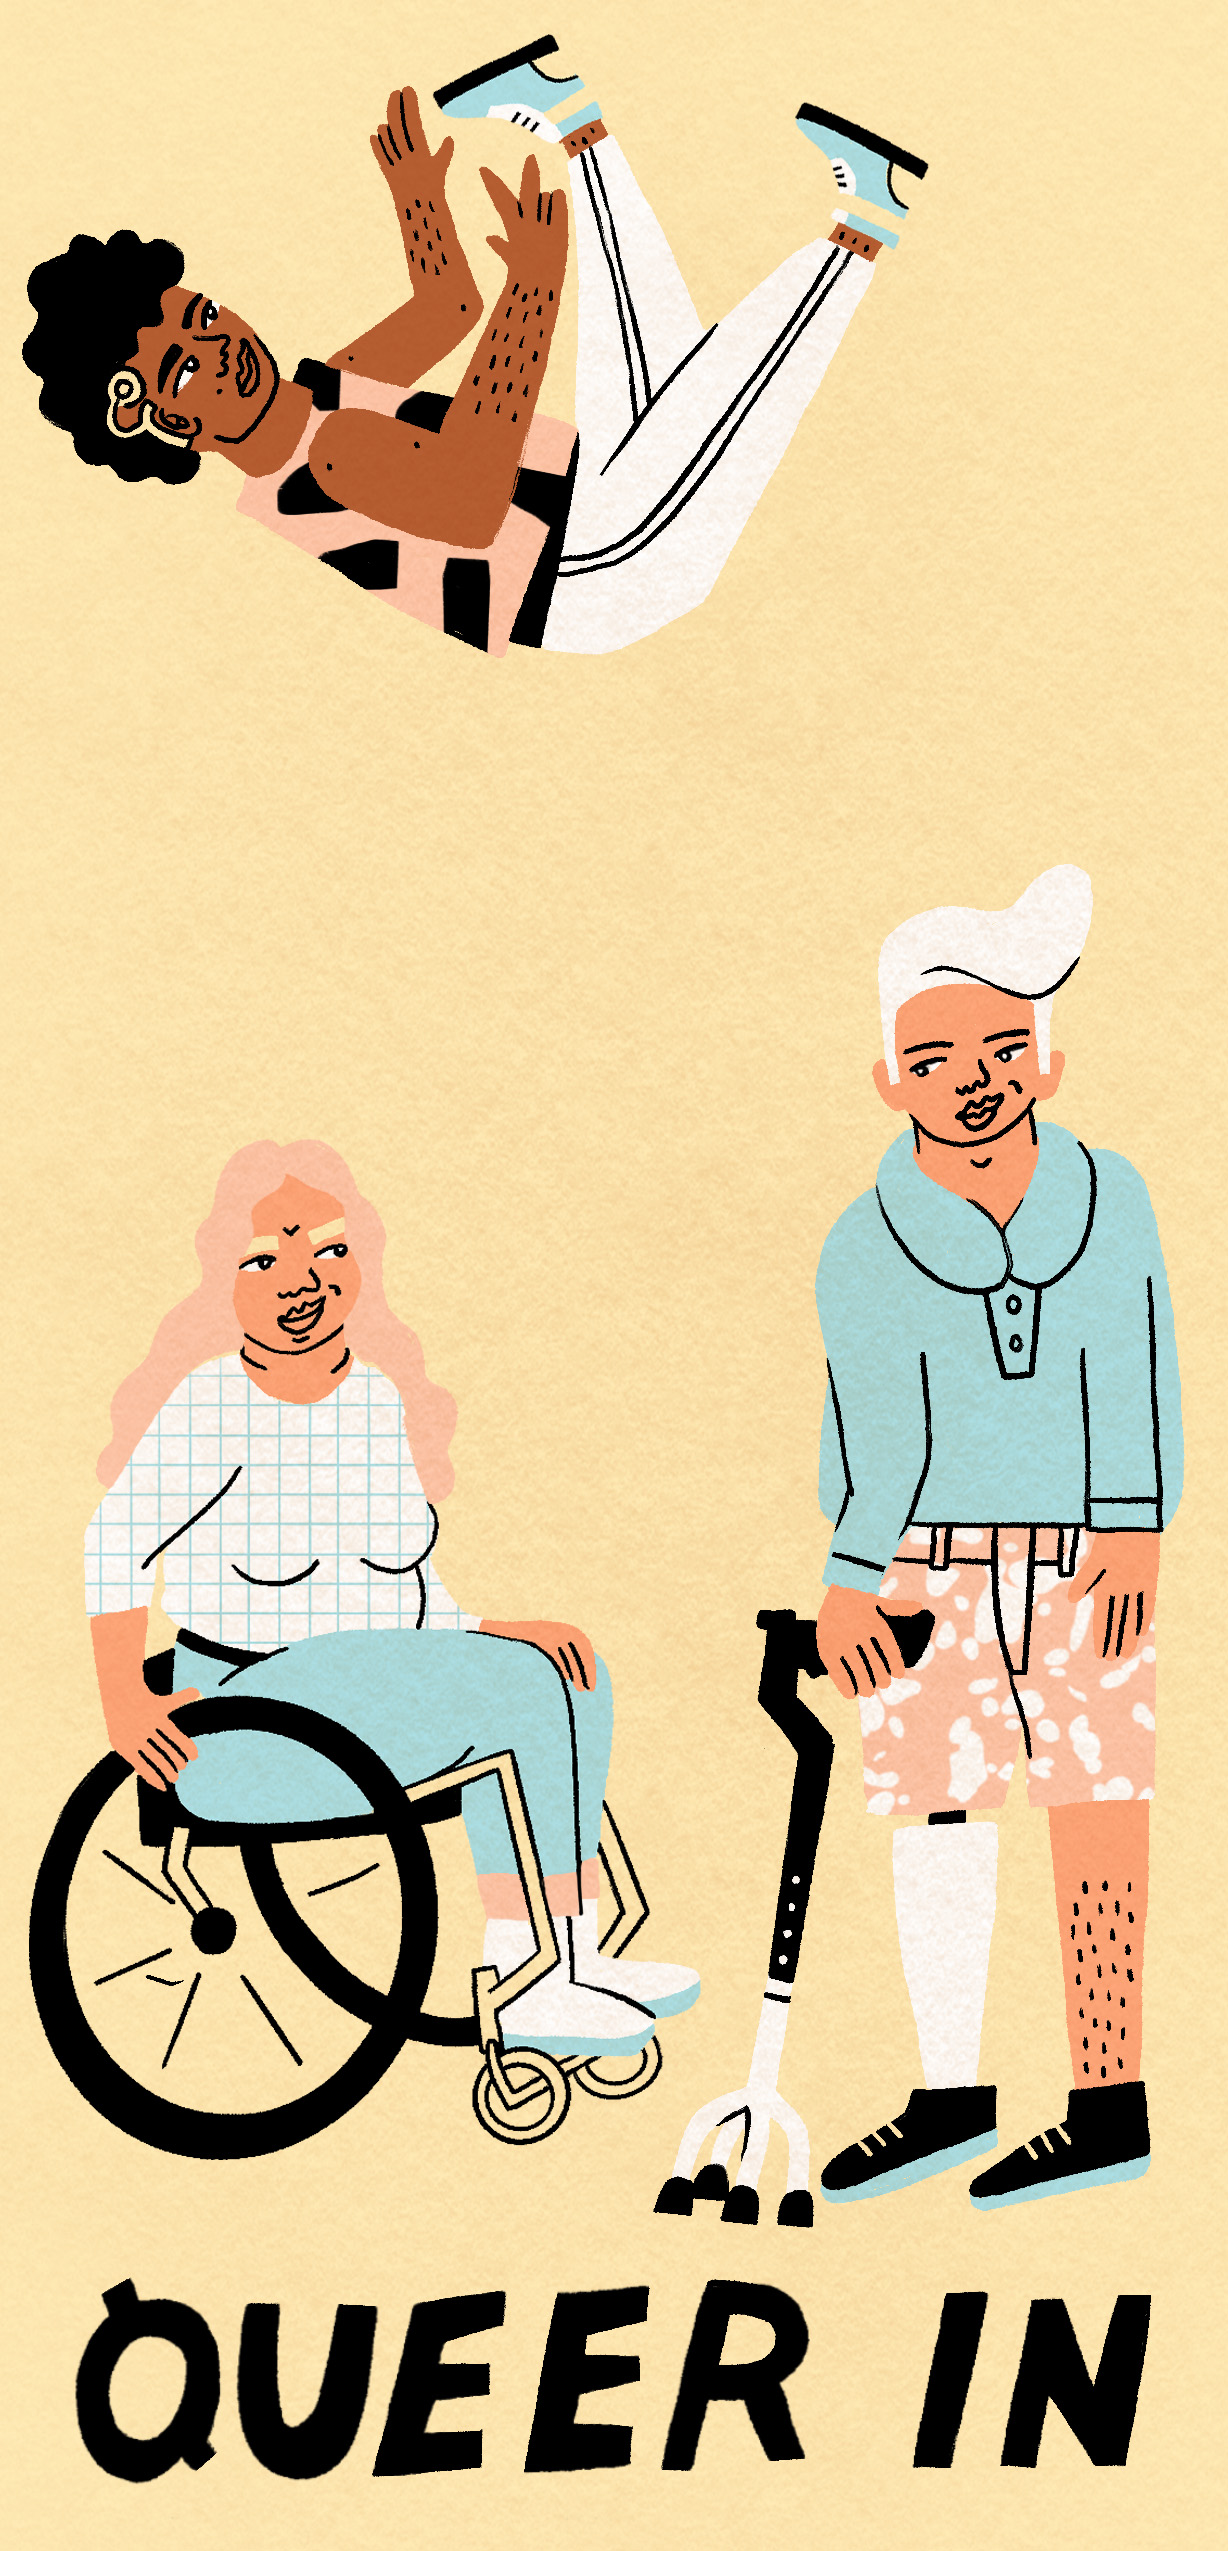 Die Illustration zeigt drei Personen mit verschiedenen Behinderungen. Eine Frau mit rosa langen Haaren sitzt im Rollstuhl, ein weißhaariger Mann steht mit einer Krücke und einer Beinprothese neben ihr. Beide schauen sich freundlich an. Über ihnen rutscht ein dunkelhäutiger junger Mann mit einem Hörgerät über zwei Regenbogen in den Farben Blau, Rosa und Weiß. Am unteren Seitenrand steht in schwarzen Lettern der Begriff QUEER IN.